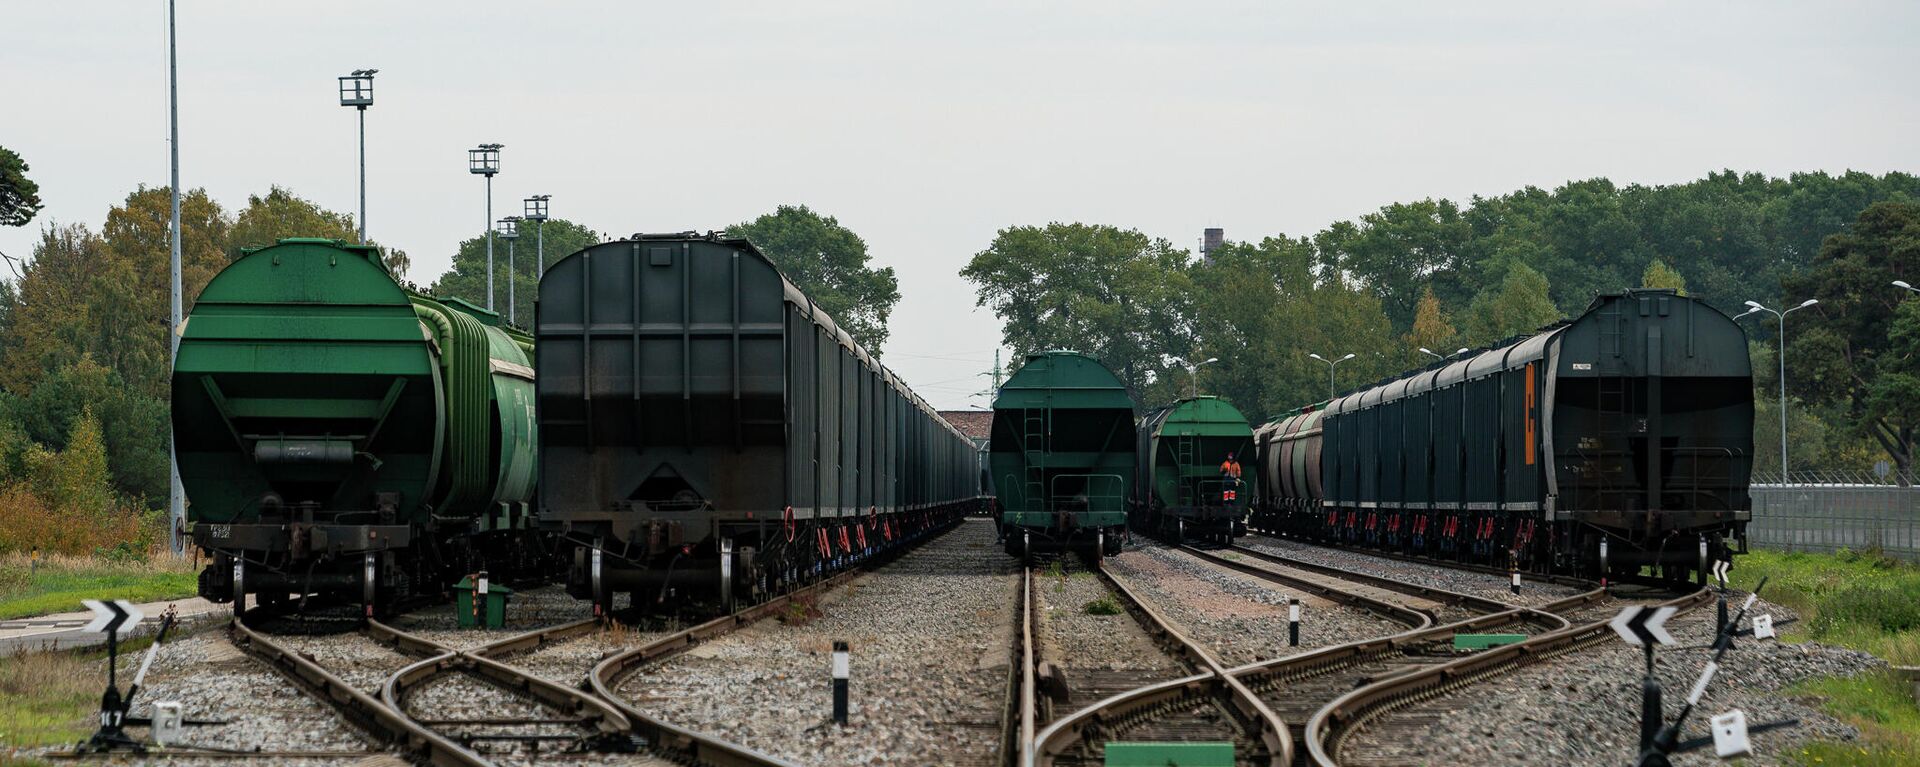 Железнодорожные вагоны с зерном на путях в Лиепае - Sputnik Латвия, 1920, 19.11.2021